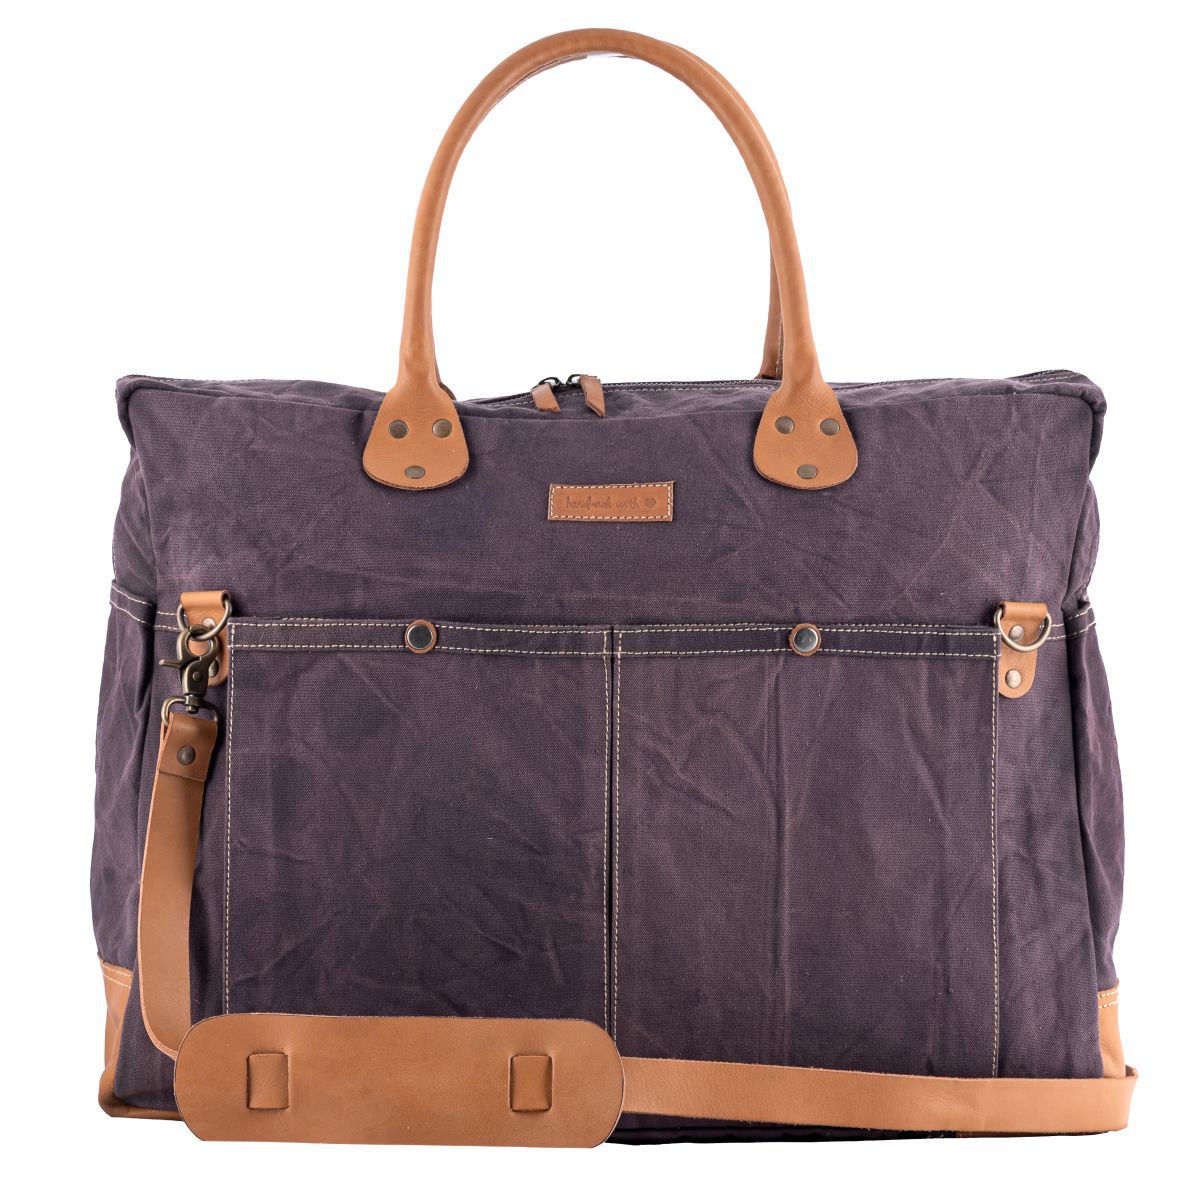 Buy Pink Eclat Weekender Bag Online at Wholesale Price | Sixtease Bags